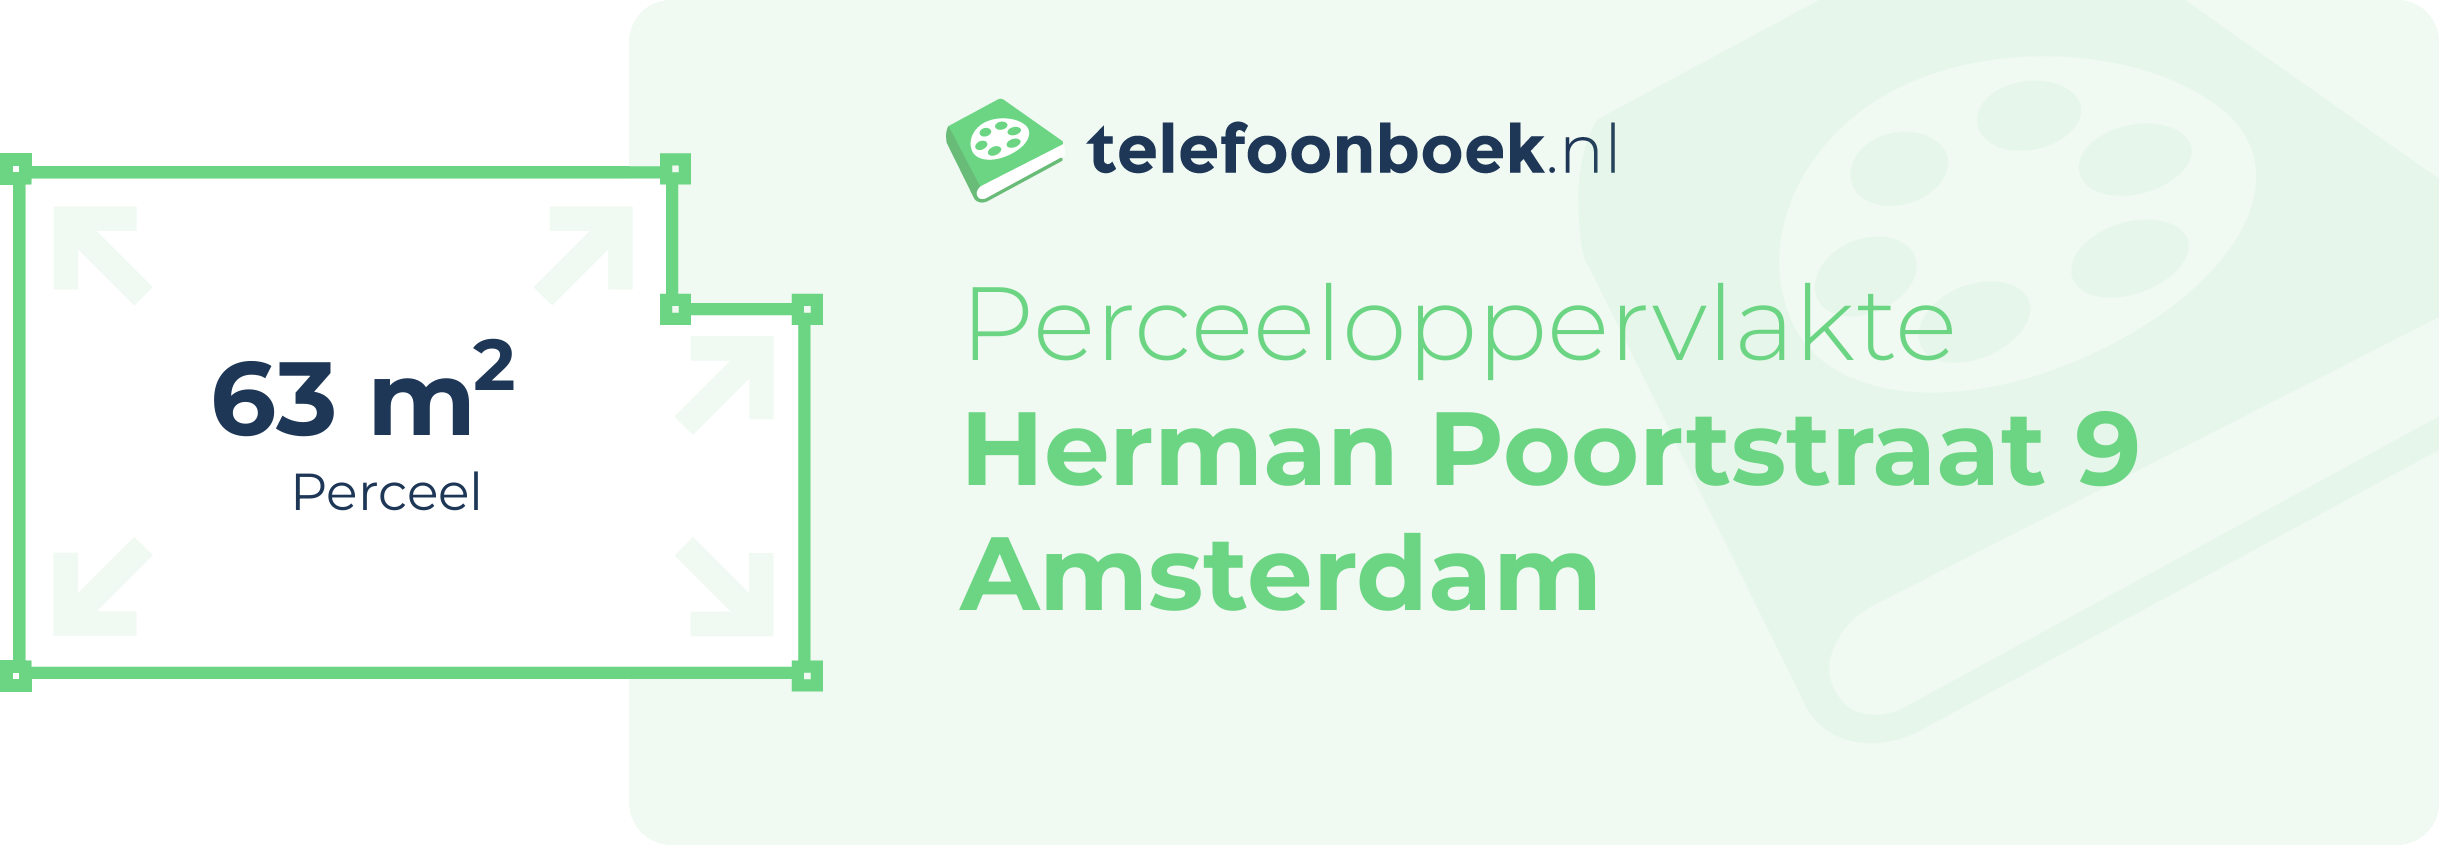 Perceeloppervlakte Herman Poortstraat 9 Amsterdam